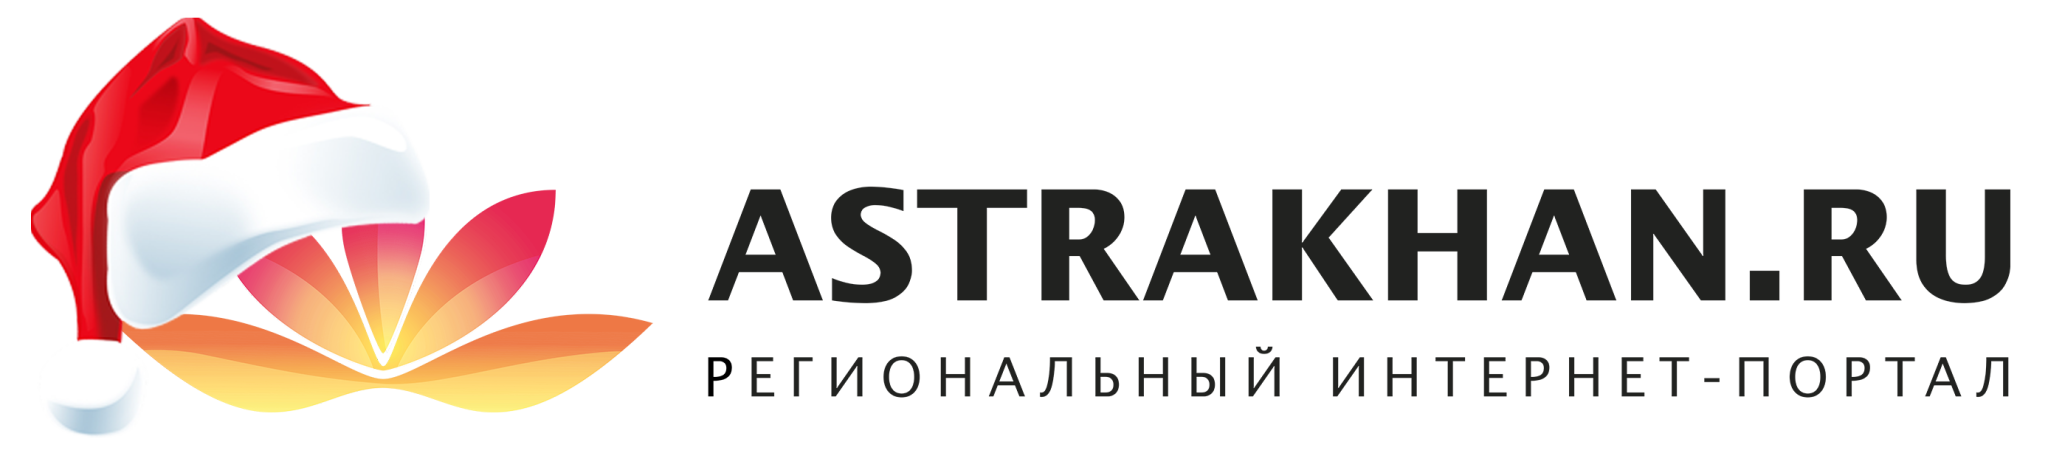 Региональный банк Астрахани. Астрахань ру. Астрахань ру логотип. Портал Астрахань. Сайт портал астрахань